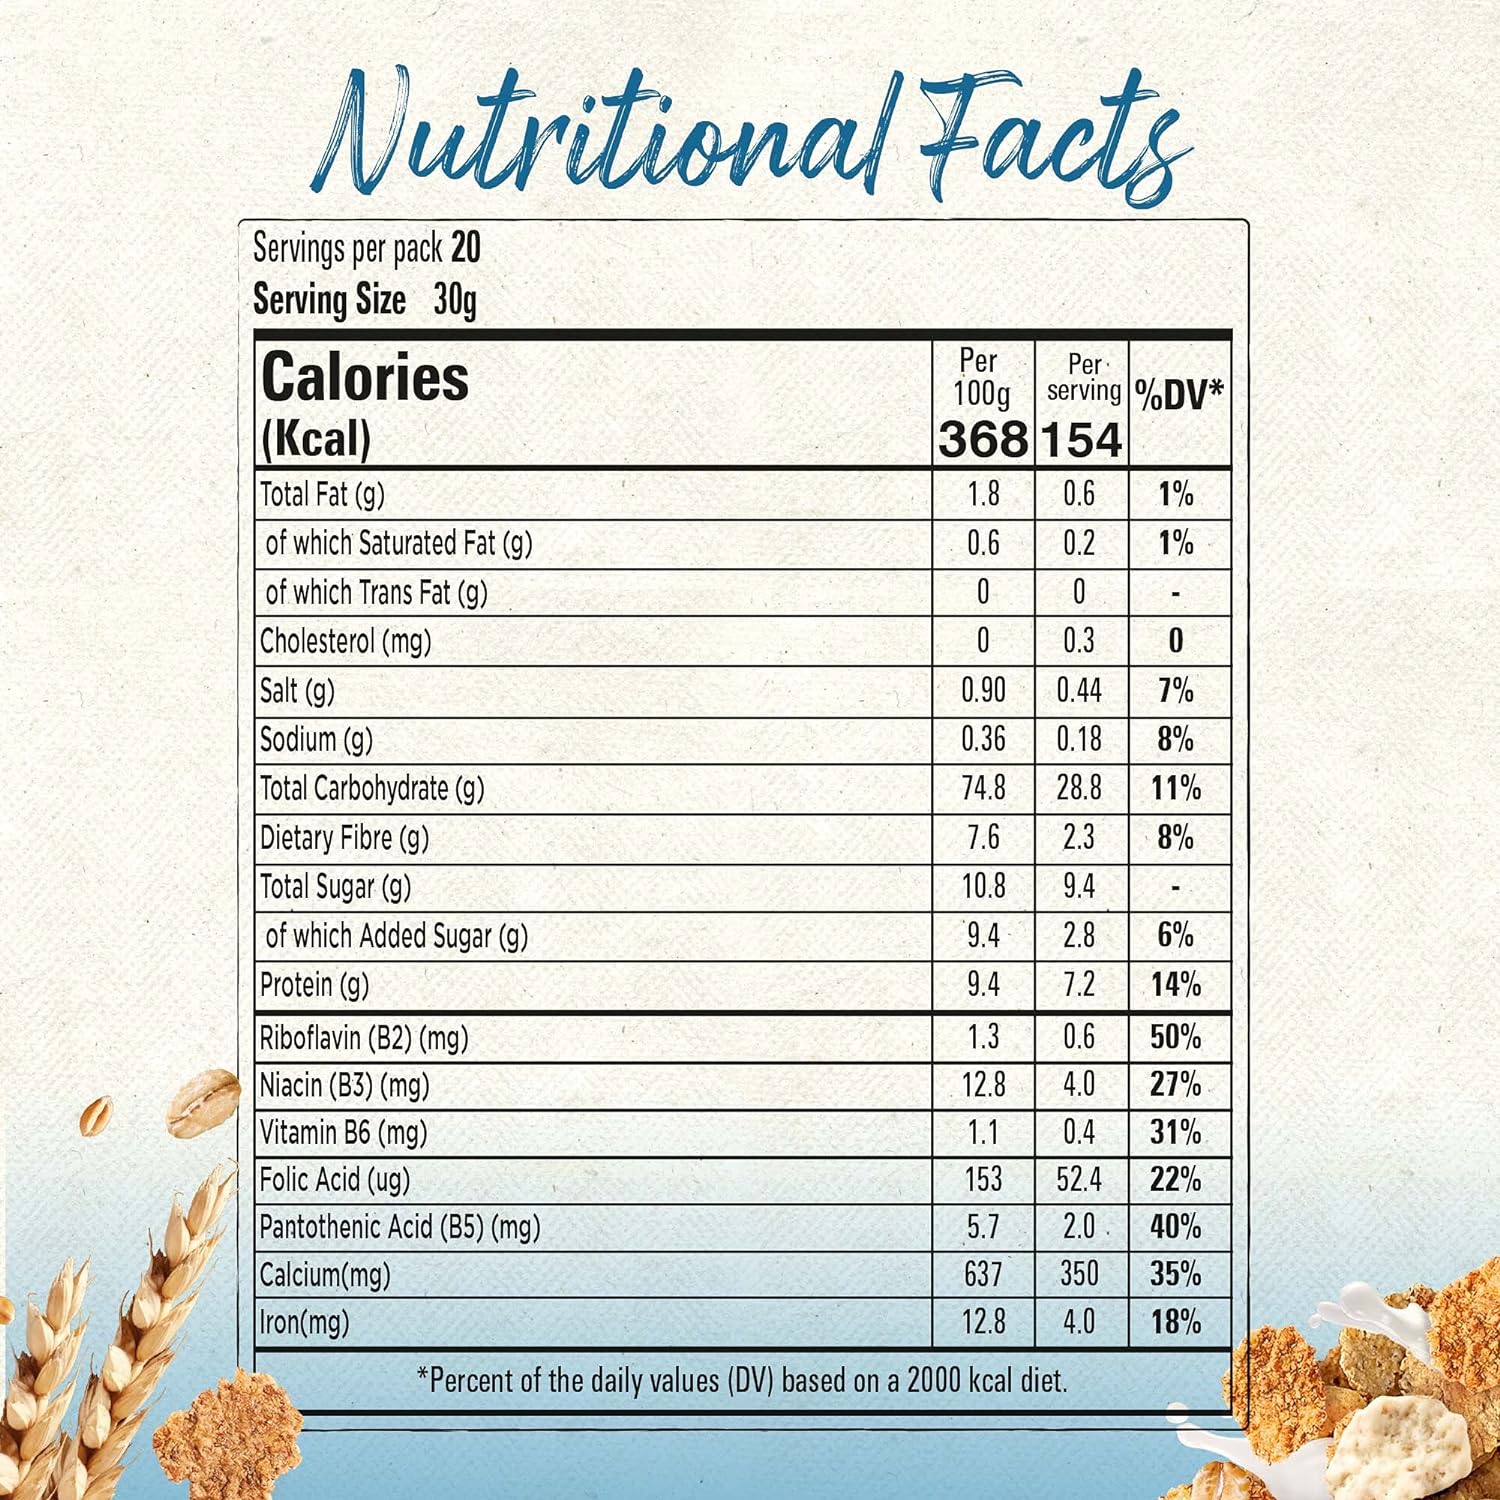 Nestle Fitness Breakfast Cereal Pack 625g